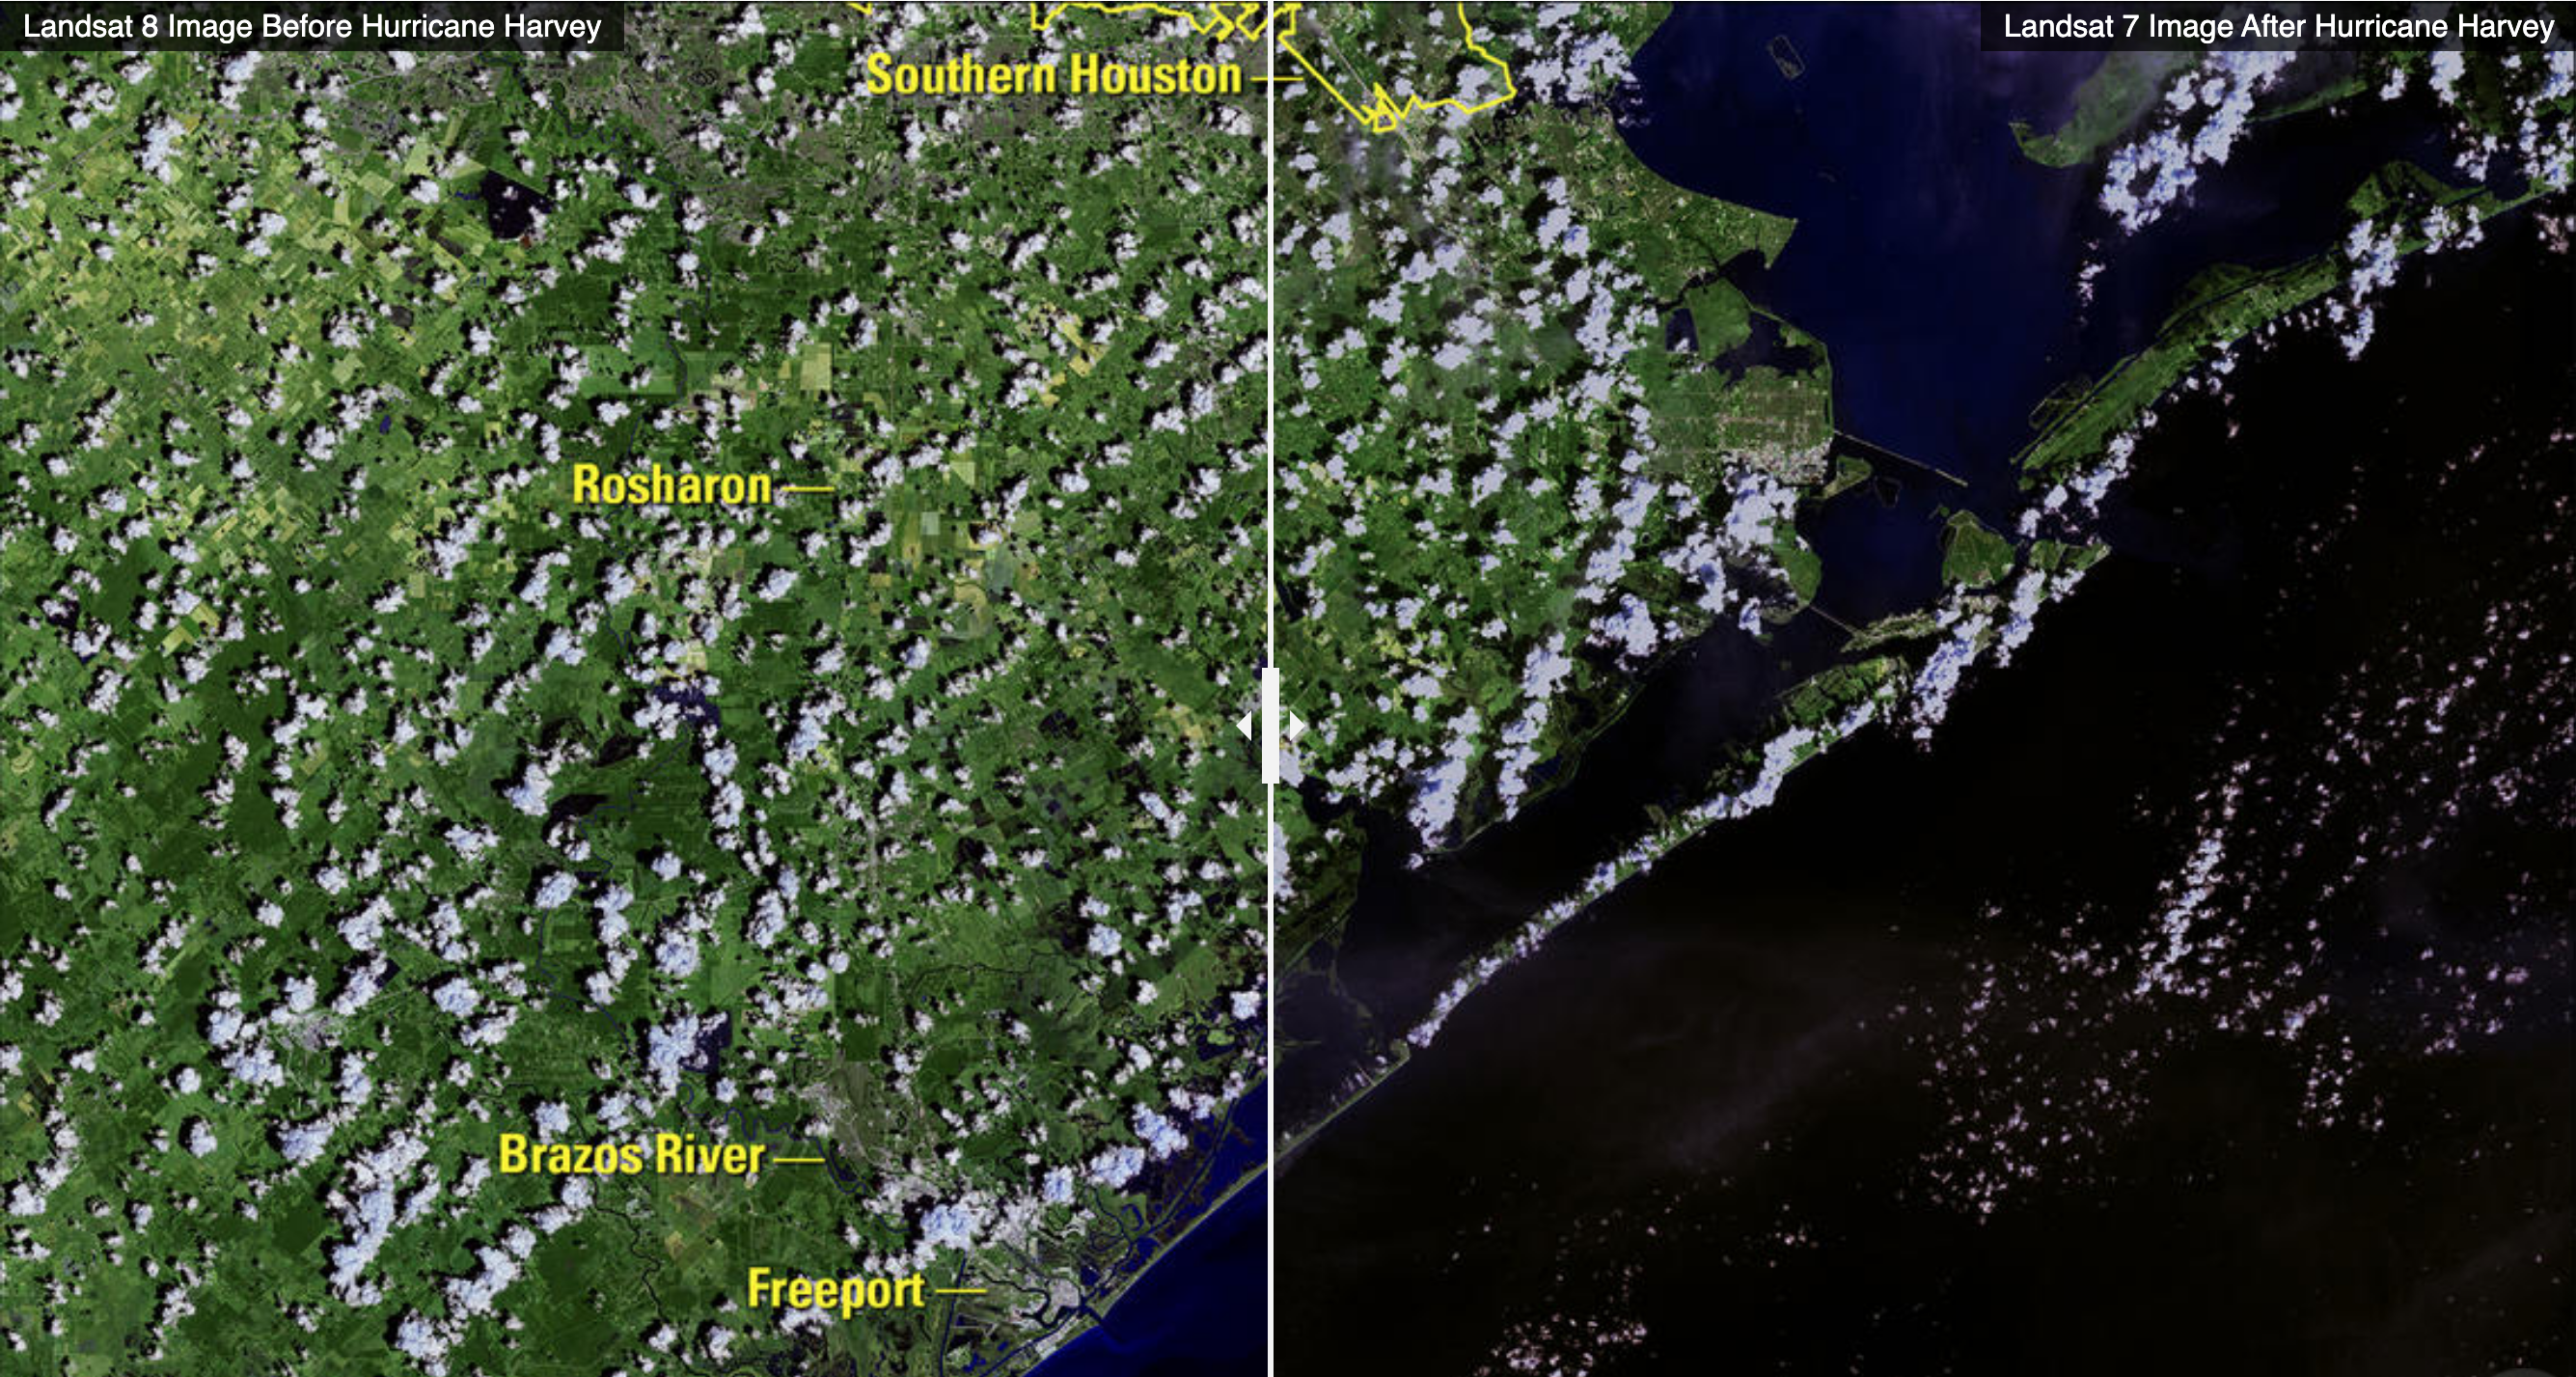 Gambar Landsat 7 dan Landsat 8 memperlihatkan banjir yang merendam wilayah sekitar pantai teluk Texas, Amerika Serikat, usai dihajar Badai Harvey pada Agustus 2017. Foto: NASA/USGS